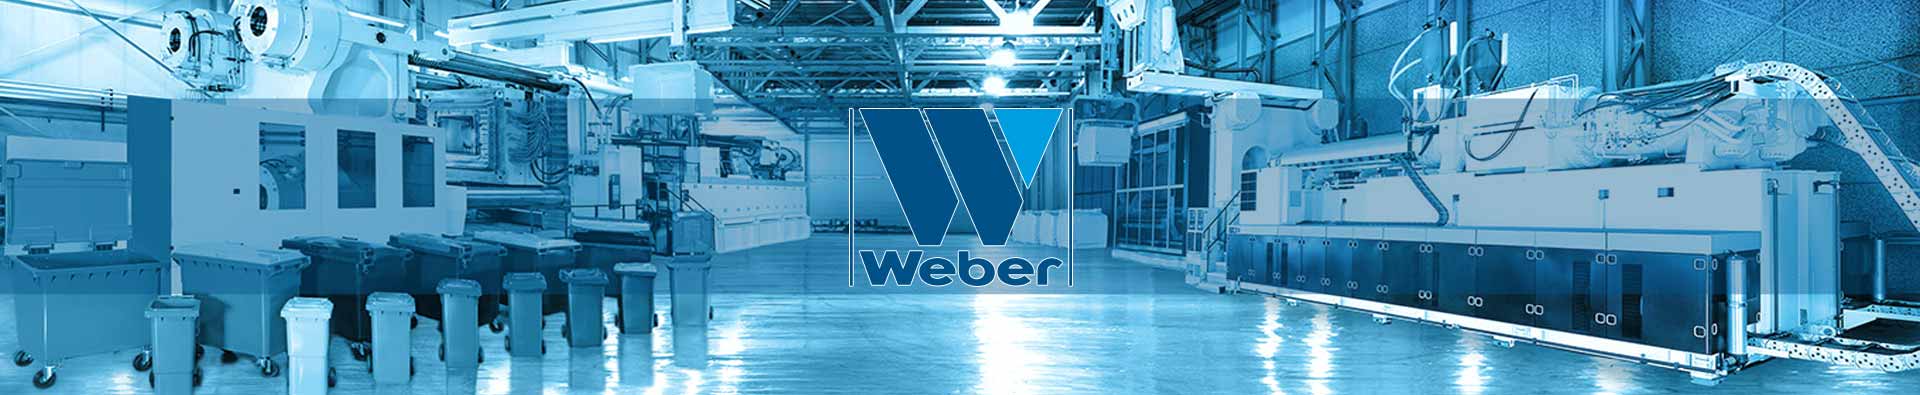 Blick in eine Produktionshalle des Herstellers Weber